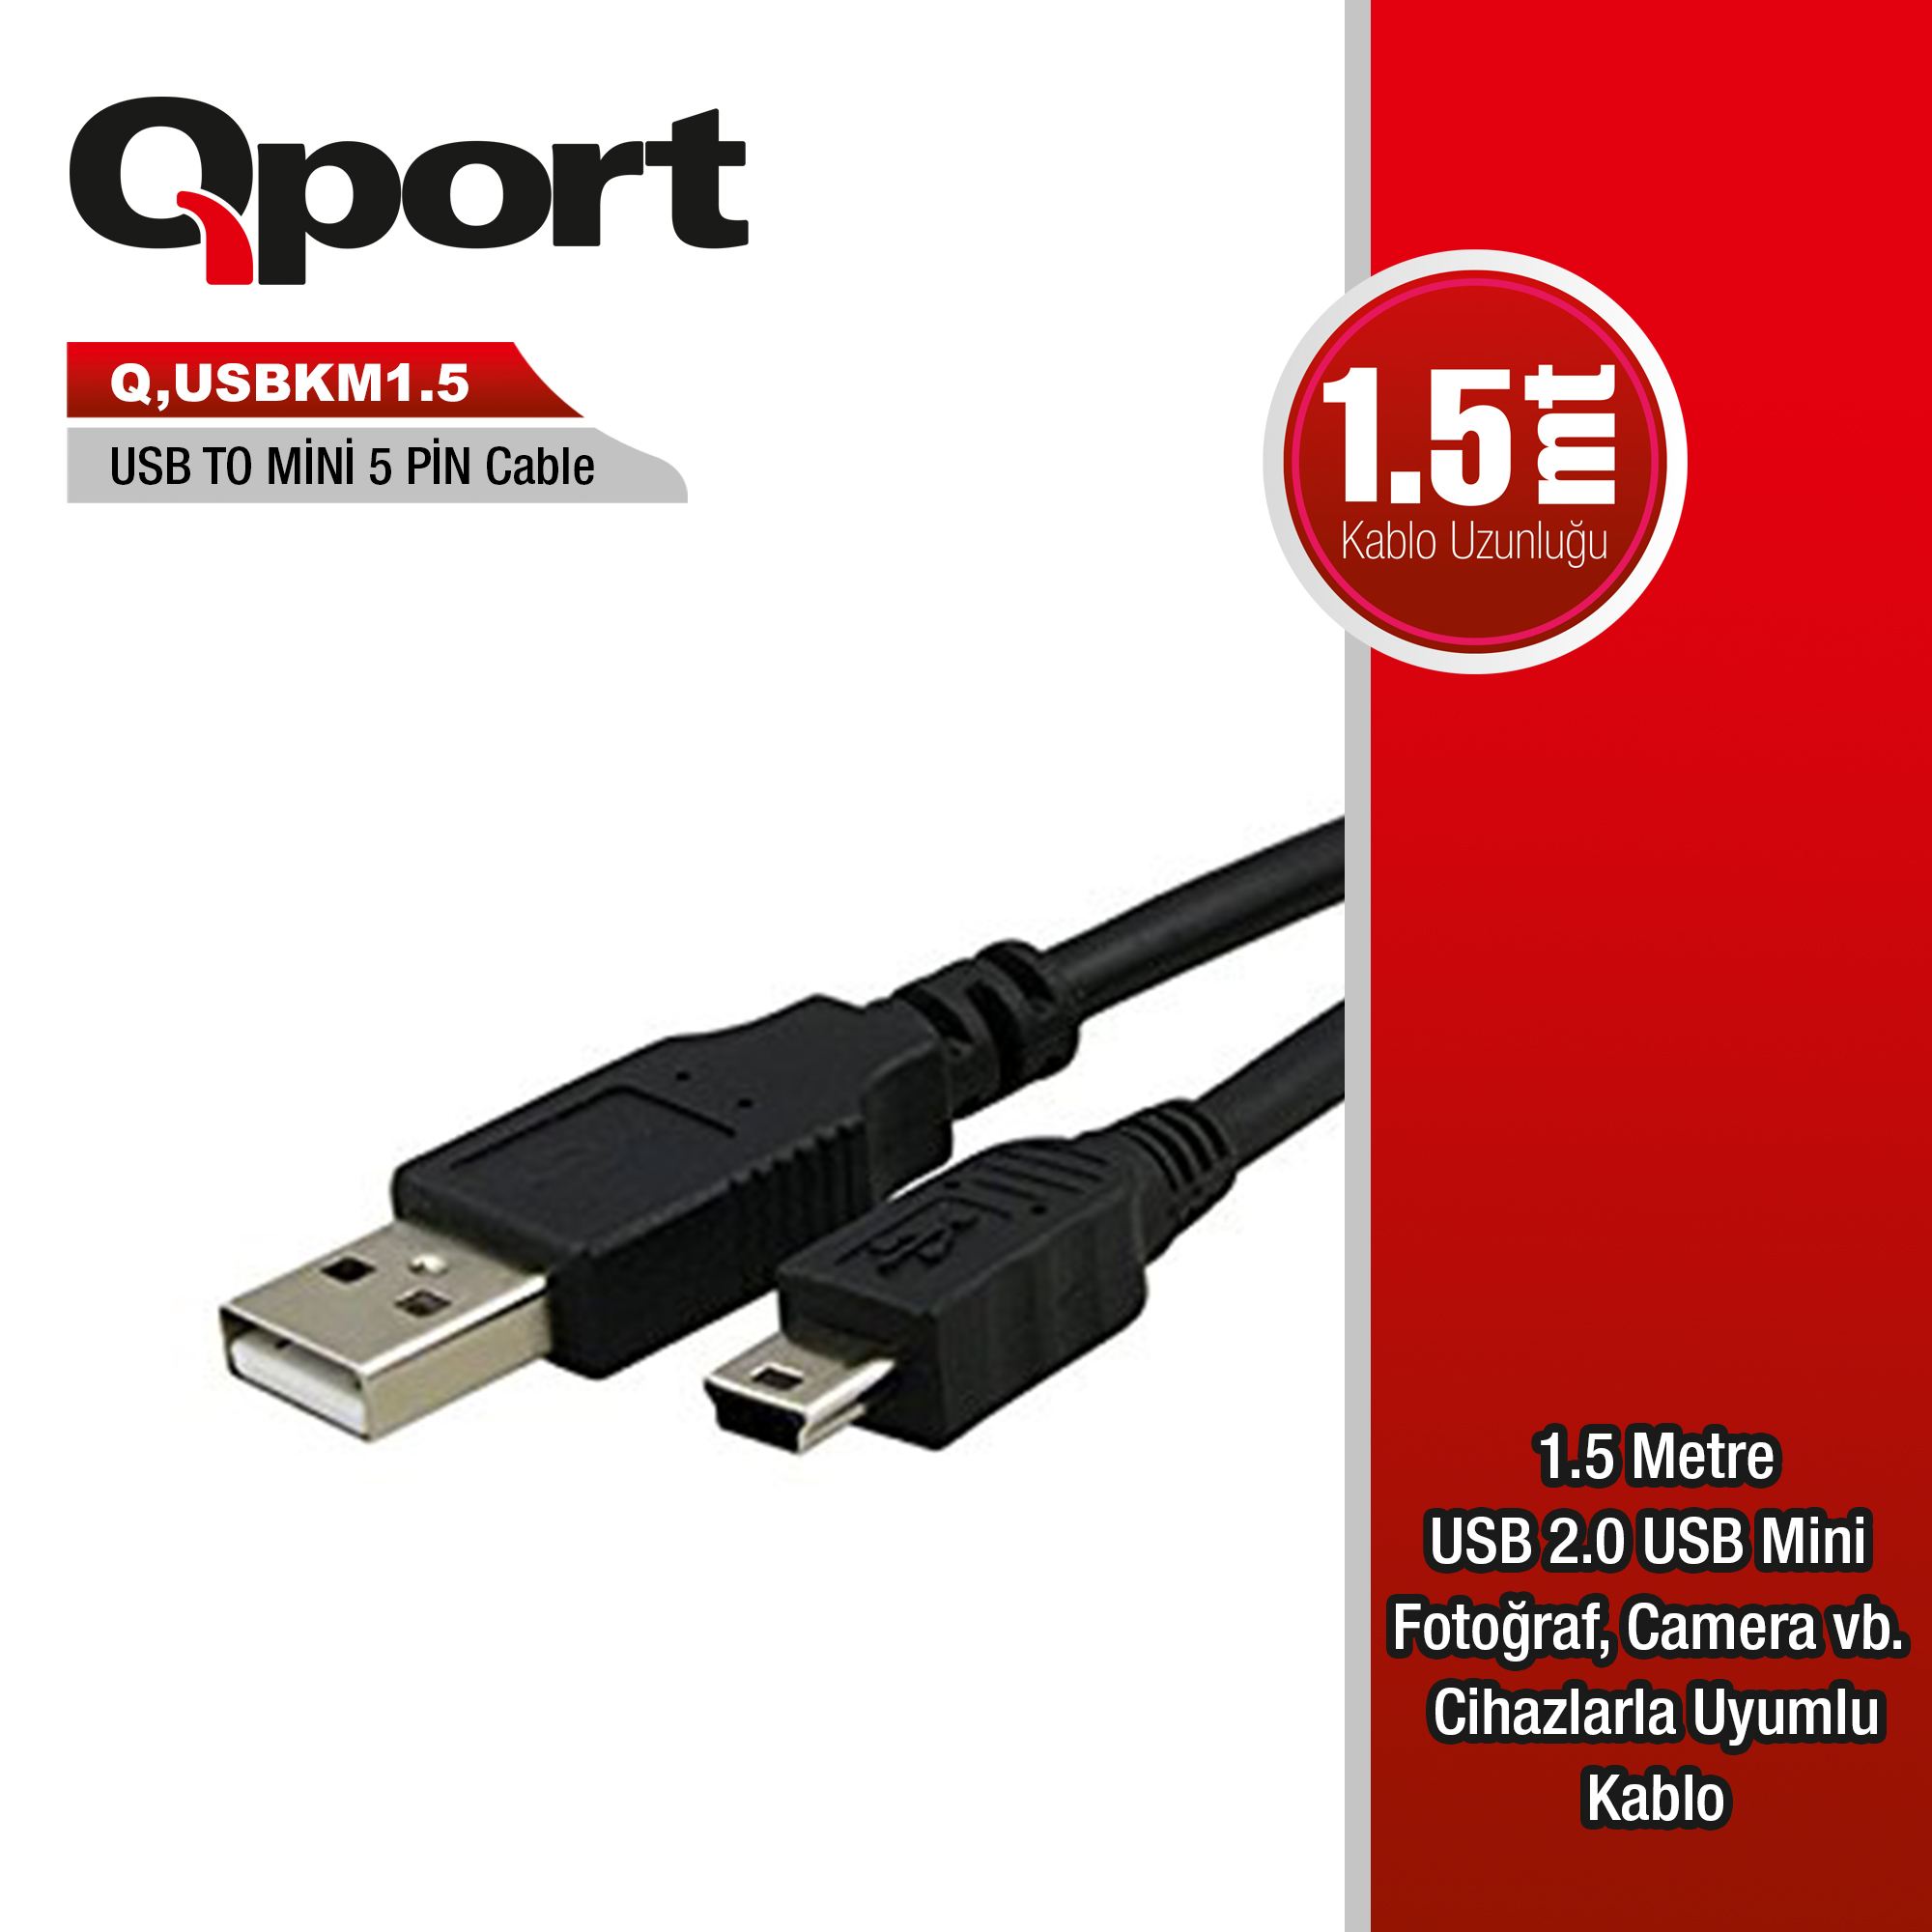 QPORT Q-USBKM1.5 USB 1.5MT GSM MICRO 5PIN KAMERA/DATA/ŞARJ KABLO SİYAH